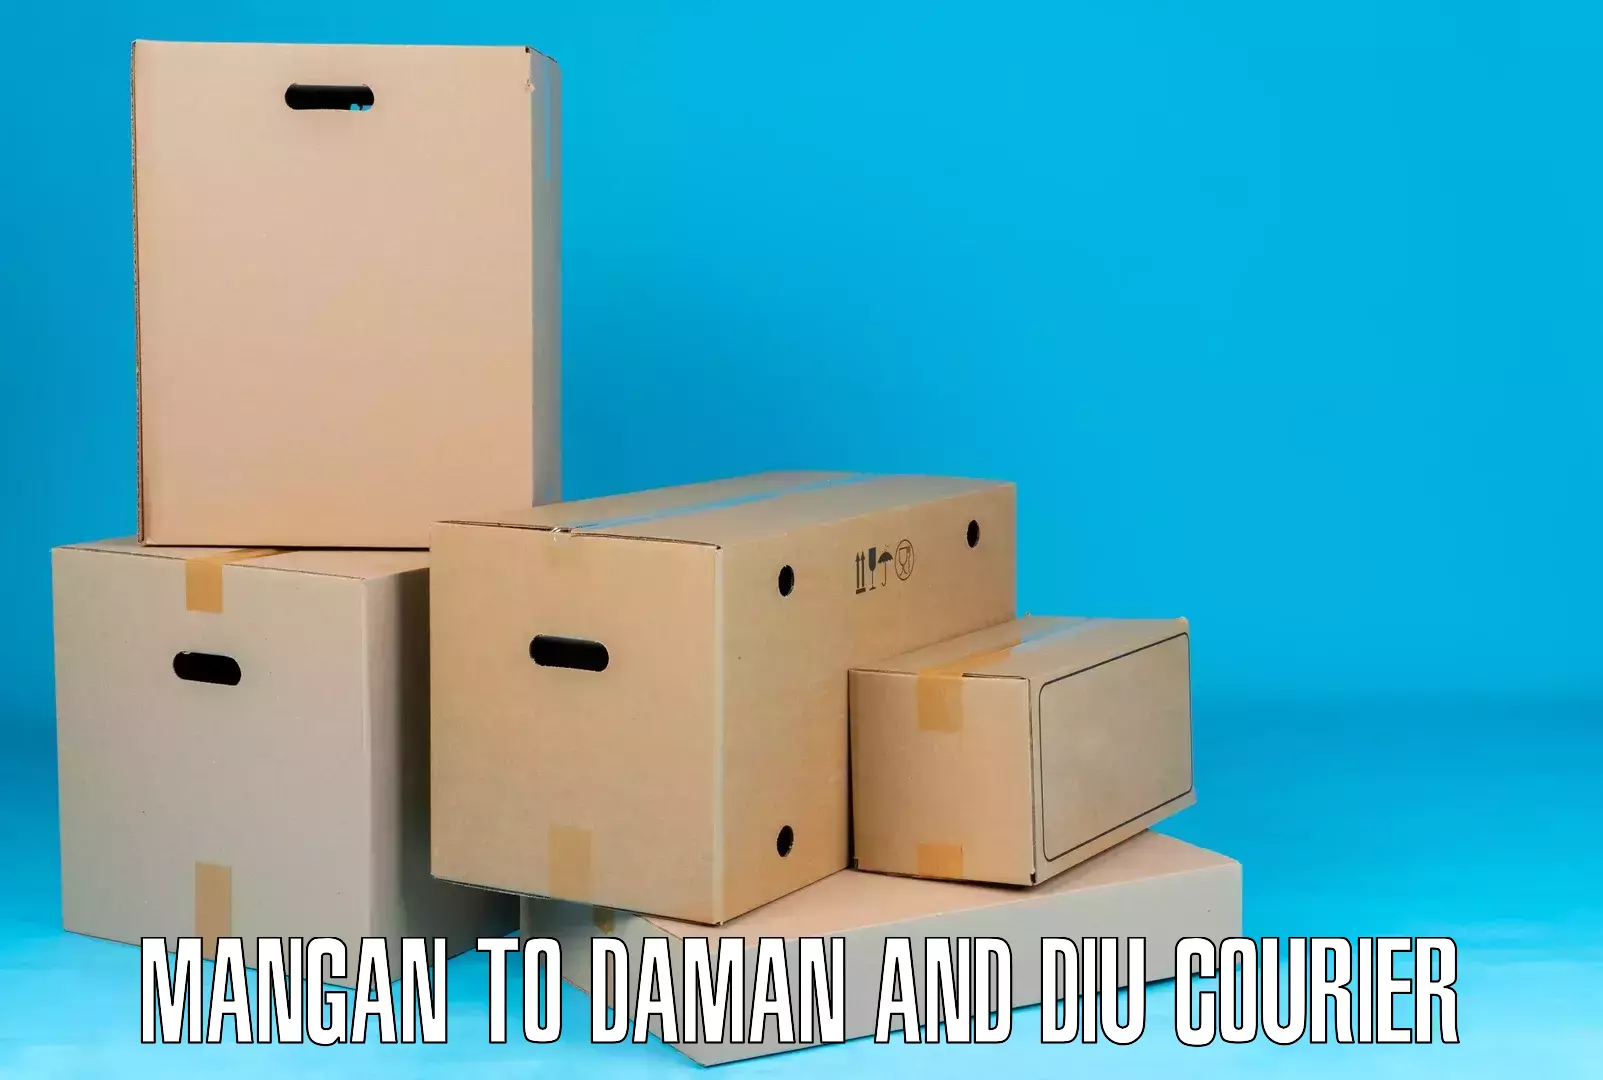 International shipping rates in Mangan to Daman